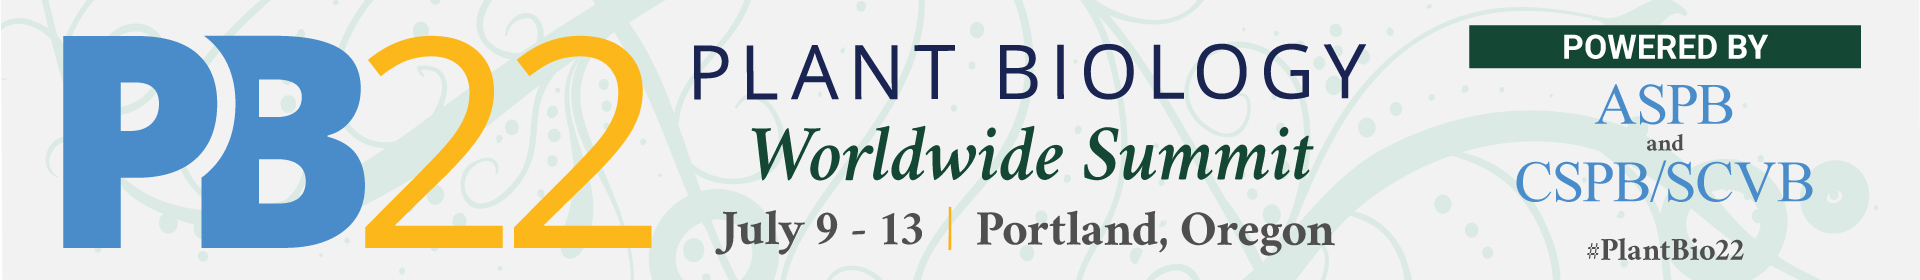 Plant Biology 2022 Worldwide Summit Event Banner